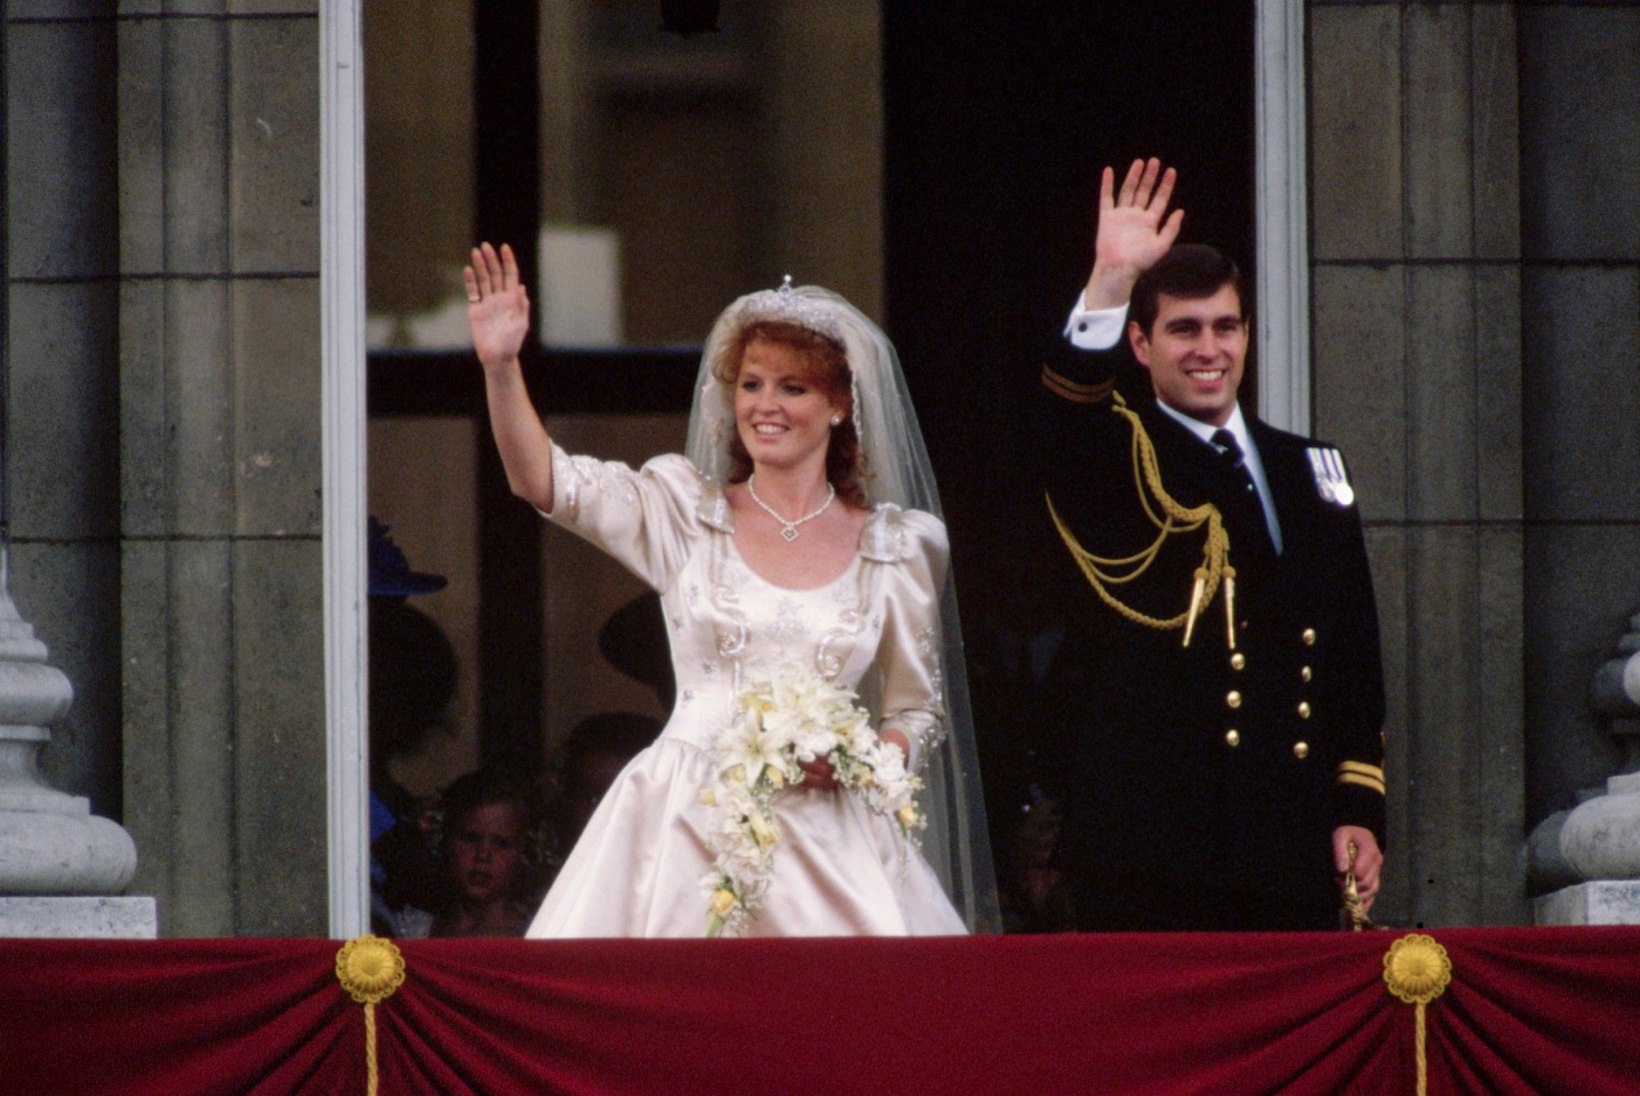 Briti prints Andrew ja tema skandaalne ekskaasa Fergie abielluvad uuesti?!